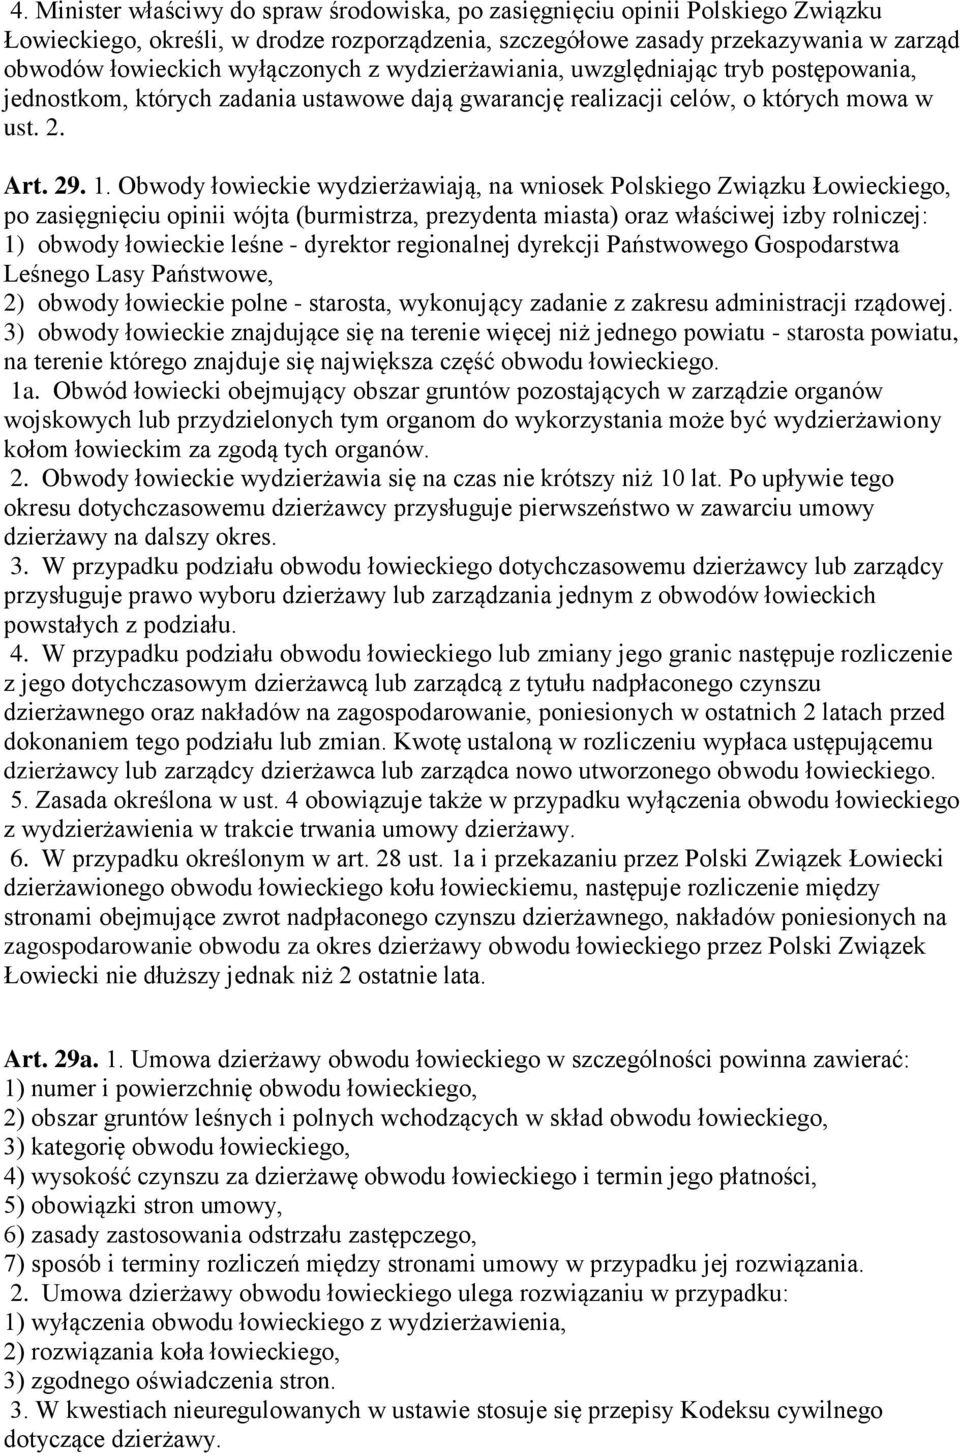 Obwody łowieckie wydzierżawiają, na wniosek Polskiego Związku Łowieckiego, po zasięgnięciu opinii wójta (burmistrza, prezydenta miasta) oraz właściwej izby rolniczej: 1) obwody łowieckie leśne -